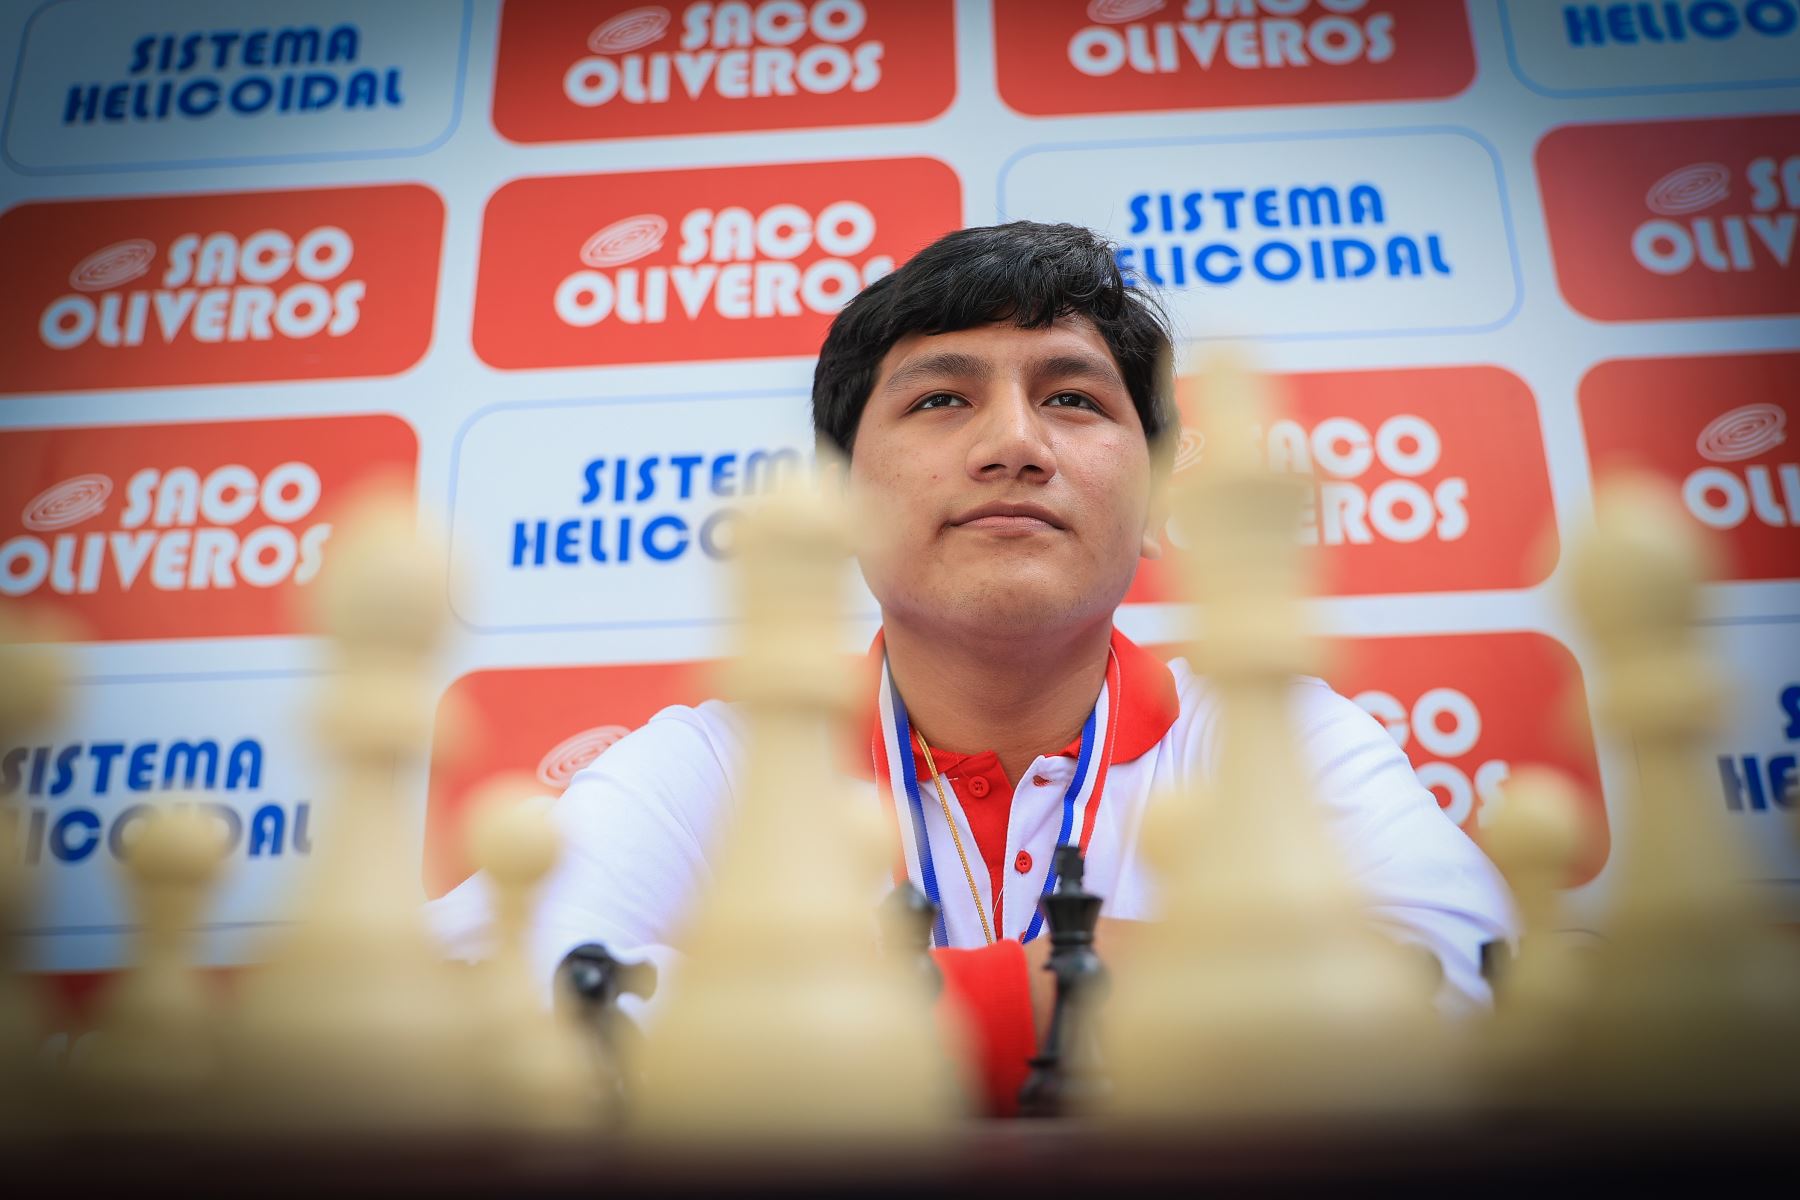 El equipo peruano se coronó campeón mundial escolar de ajedrez en Panamá, tras superar a cerca de 600 ajedrecistas de 36 países. Henry Vasquéz estudiante de 16 años del Colegio Saco Oliveros obtuvo la medalla de oro en su categoría. 
Foto: ANDINA/Andrés Valle